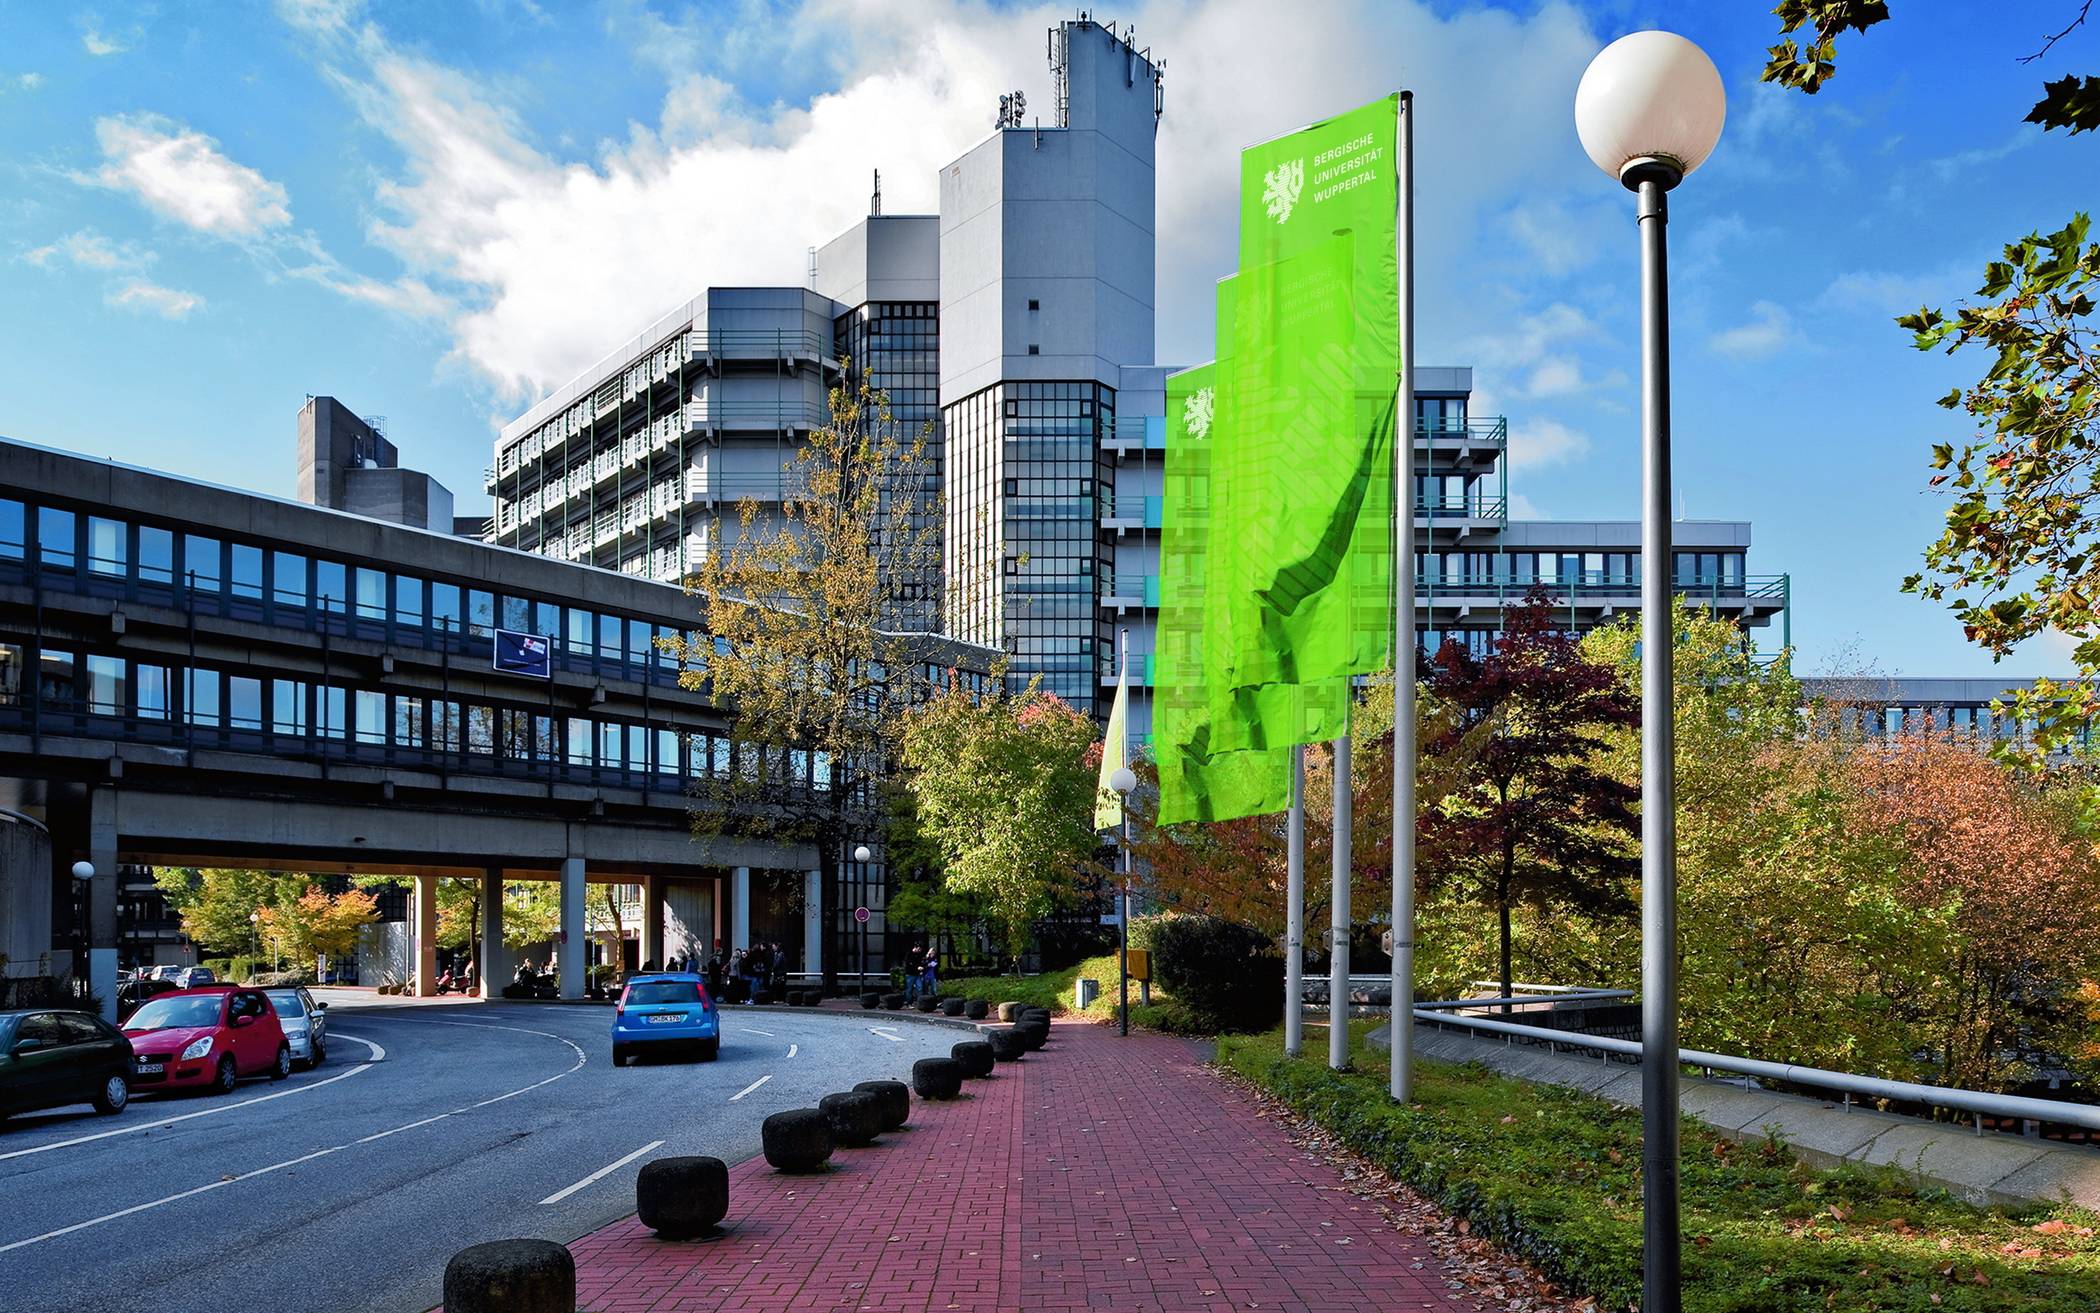  Das DigIT_Campus-Projektteam, bestehend aus Experten der Bergischen Universität Wuppertal, der Neuen Effizienz und der Utopiastadt, hat es sich zum Ziel gesetzt, kleine und mittelständische Unternehmen des Bauhandwerks im Bergischen Städtedreieck dabei der Digitalisierung zu unterstützen. 